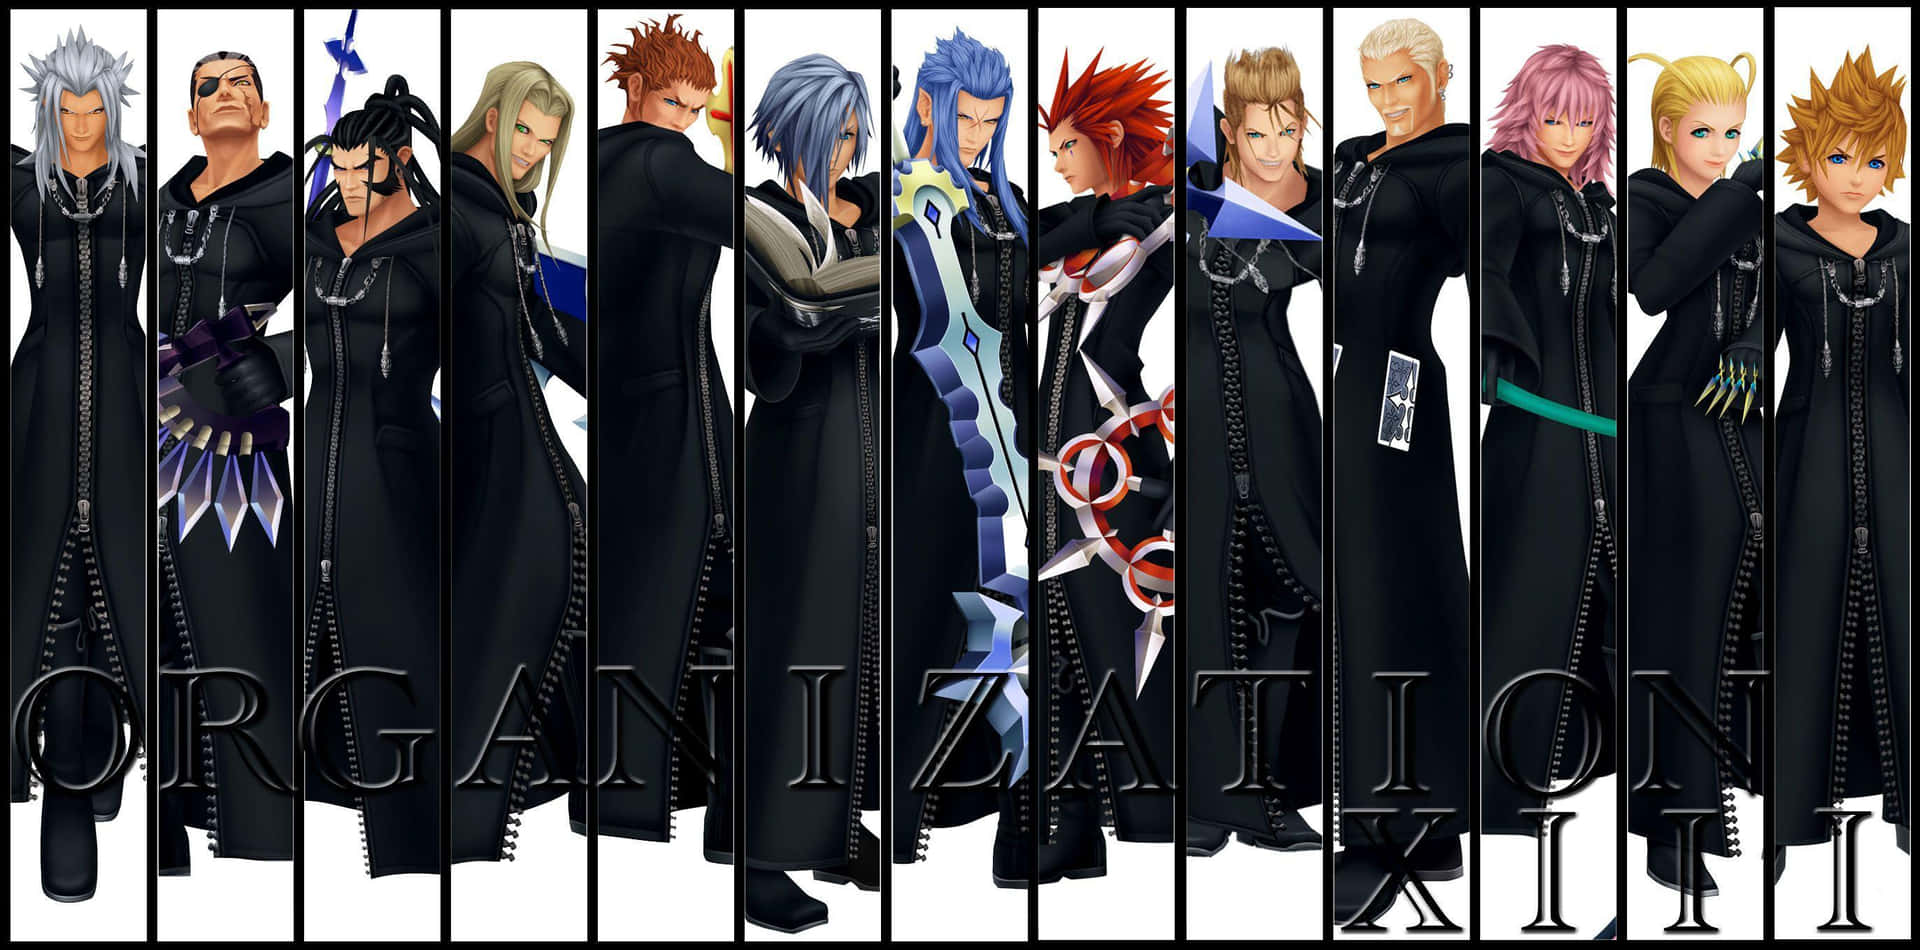 Épicaescena De Los Miembros De La Organización Xiii De Kingdom Hearts Fondo de pantalla